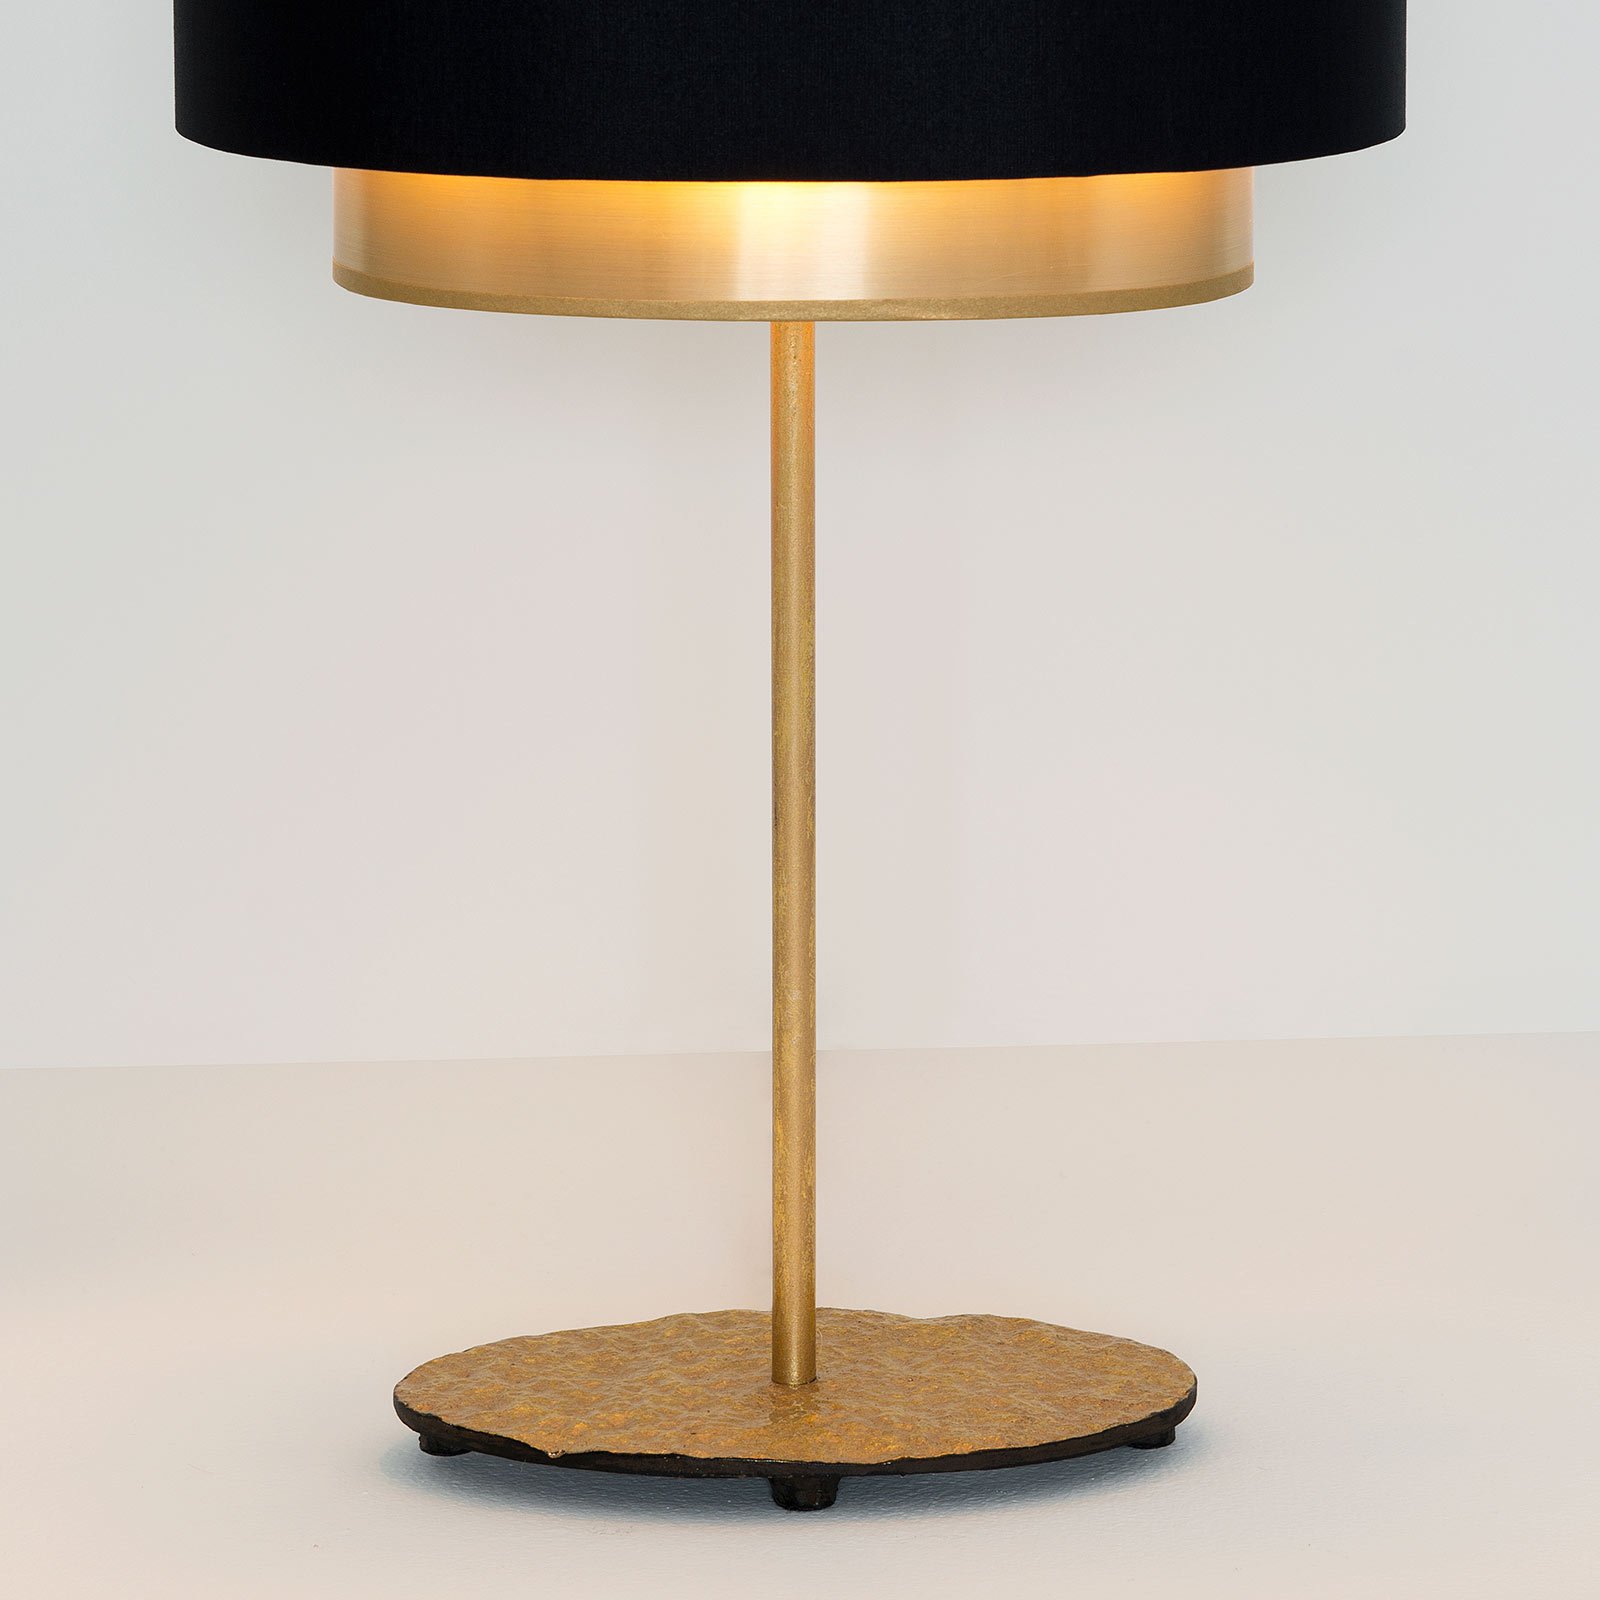 Tafellamp Mattia, ovaal, dubbel, zwart/goud